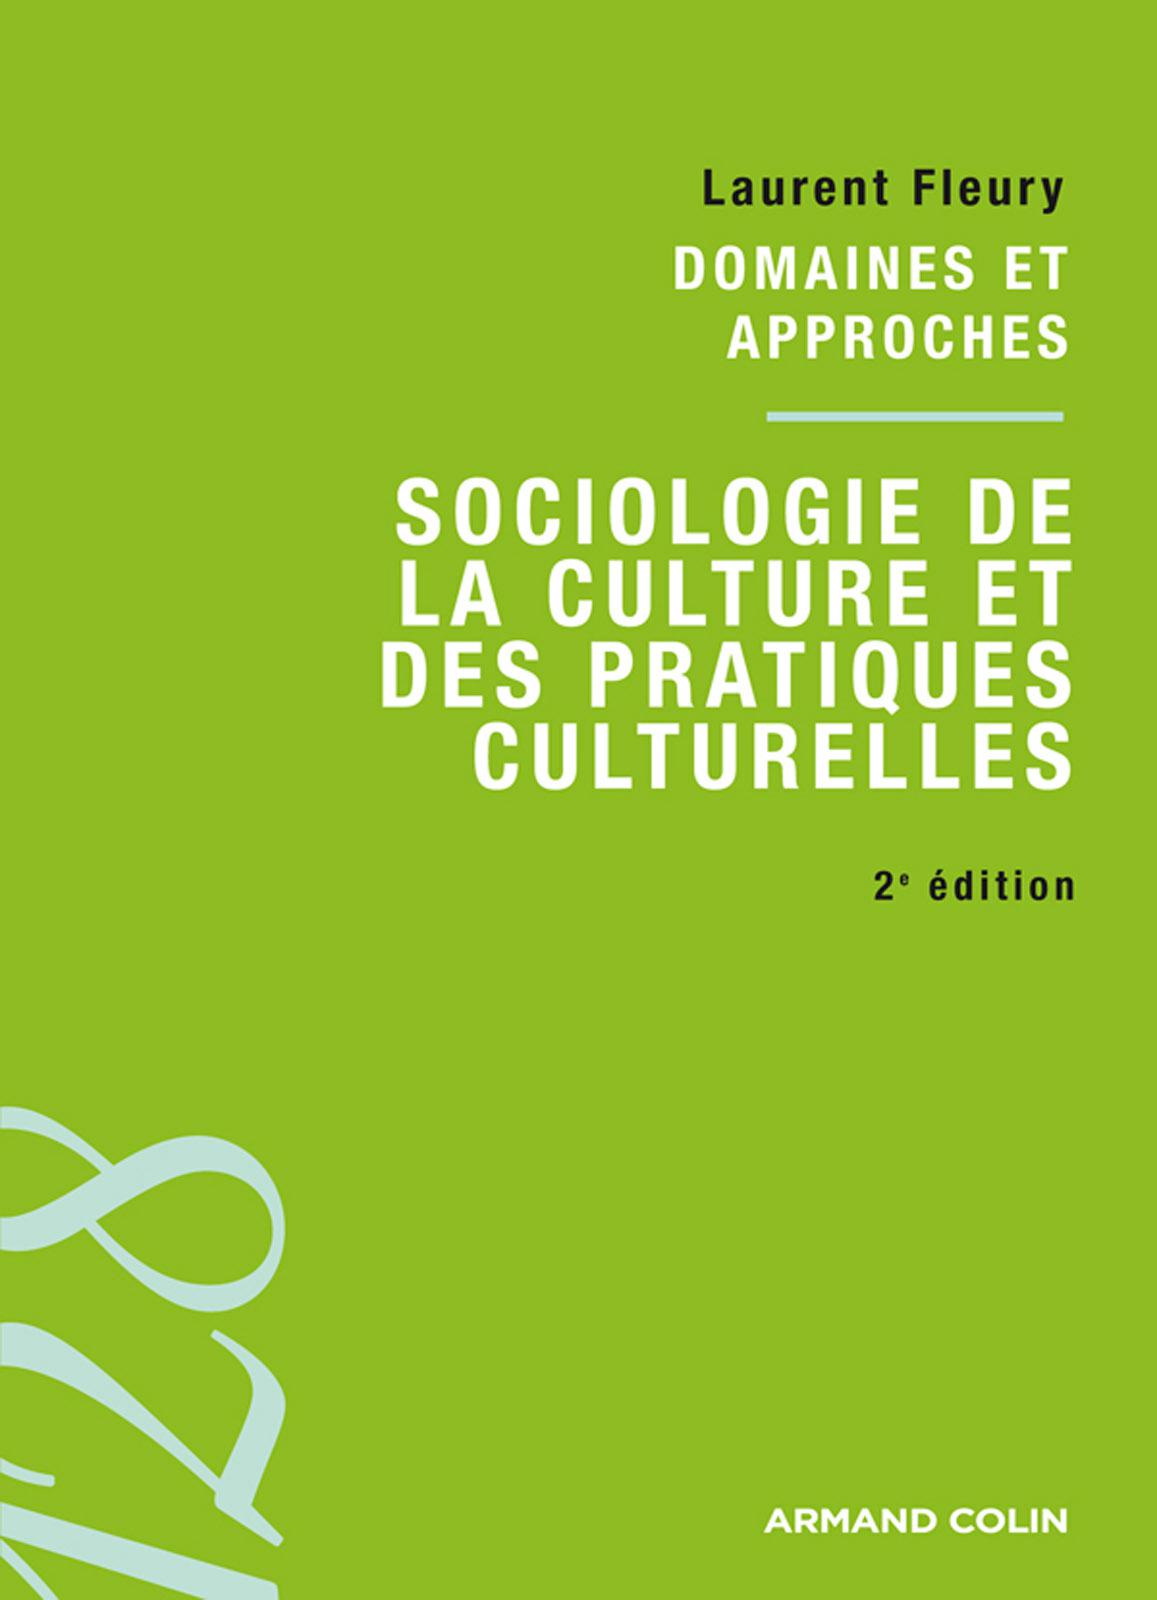 Sociologie de la culture et des pratiques 2e Edition. Laurent Fleury